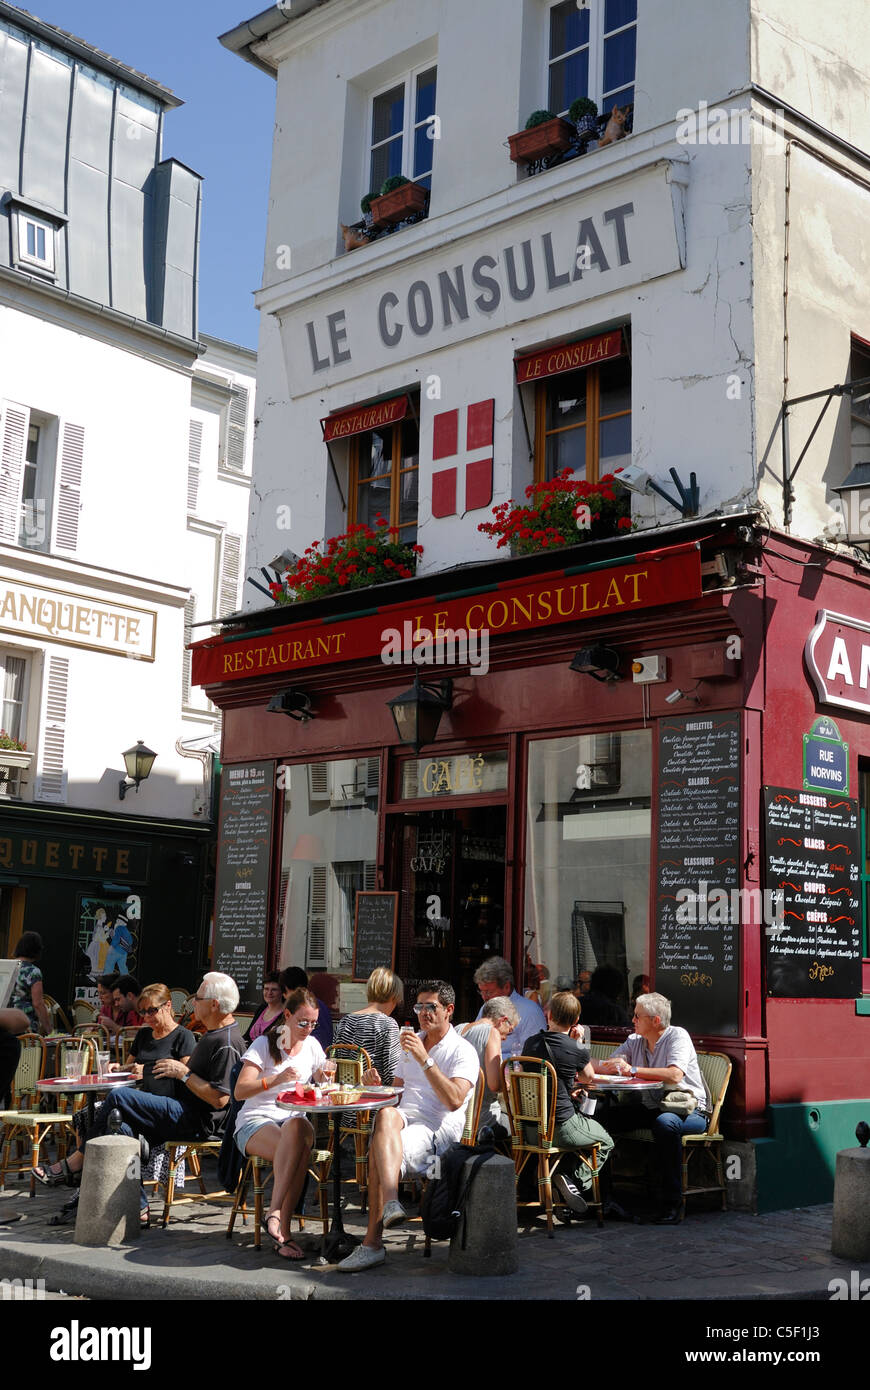 Des gens assis en plein air au café Le Consulat Rue Norvins dans le quartier populaire de Montmartre, Paris France Banque D'Images